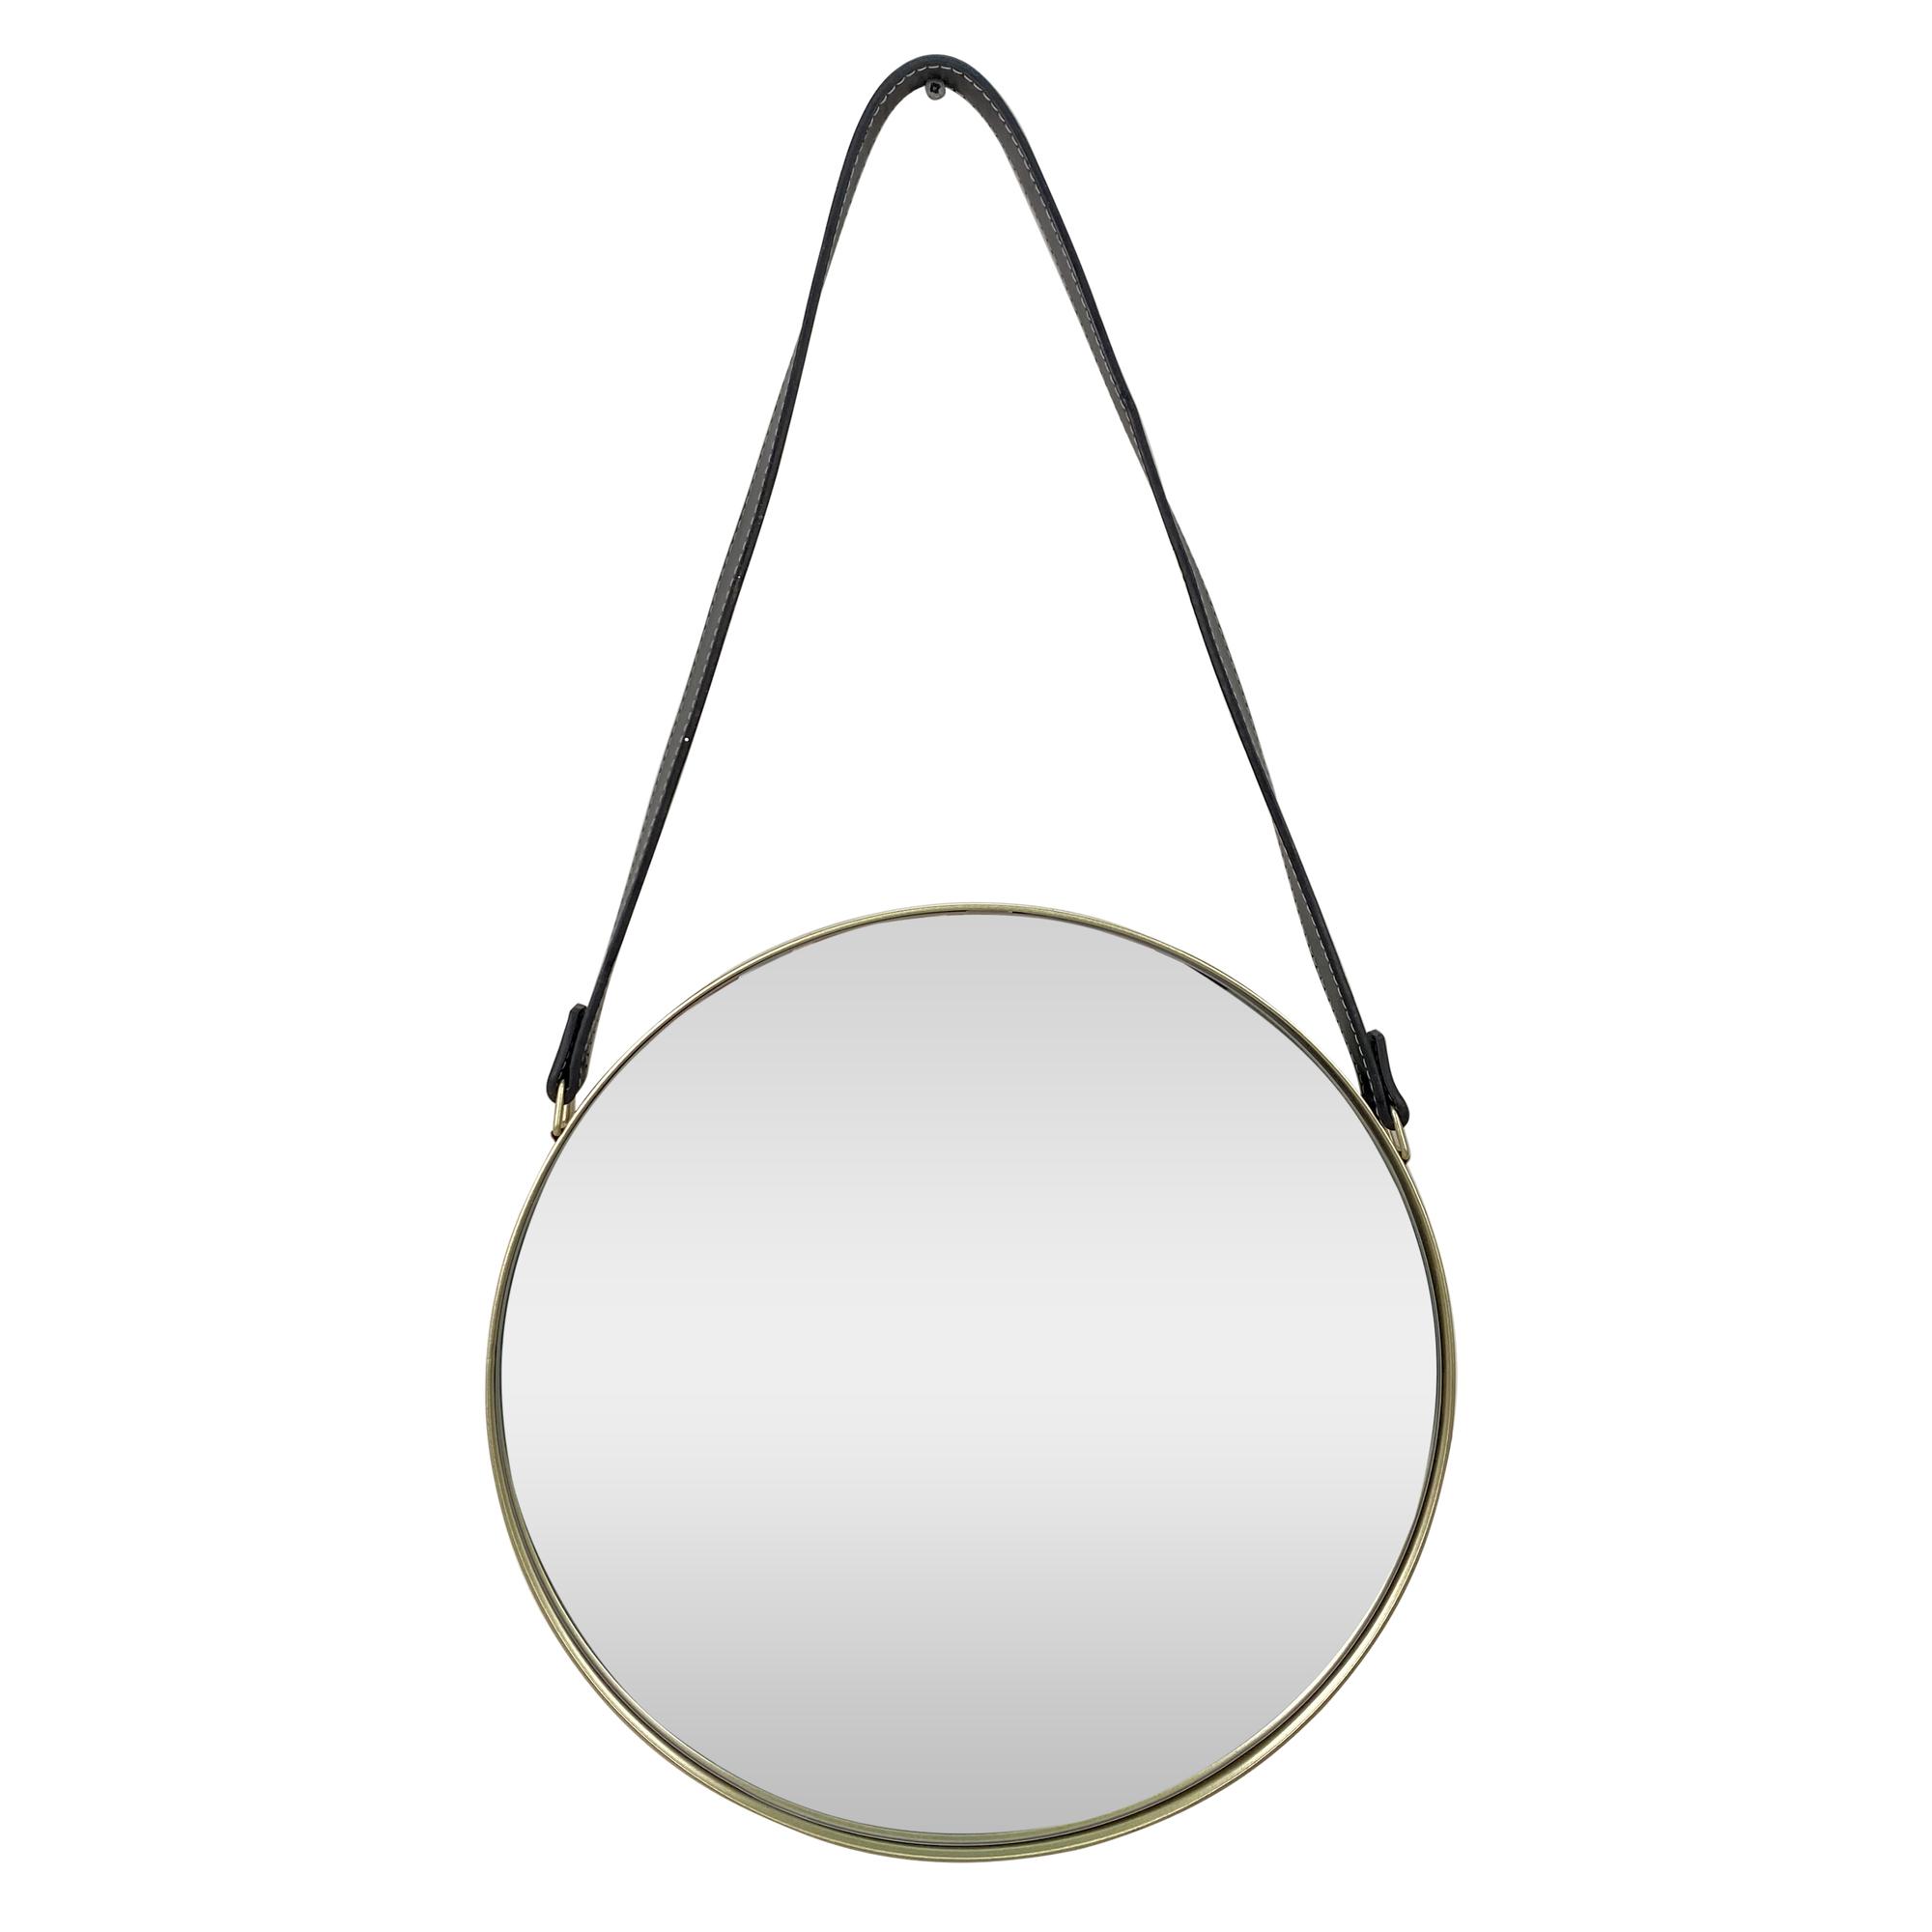 mirror with belt - 531-72560